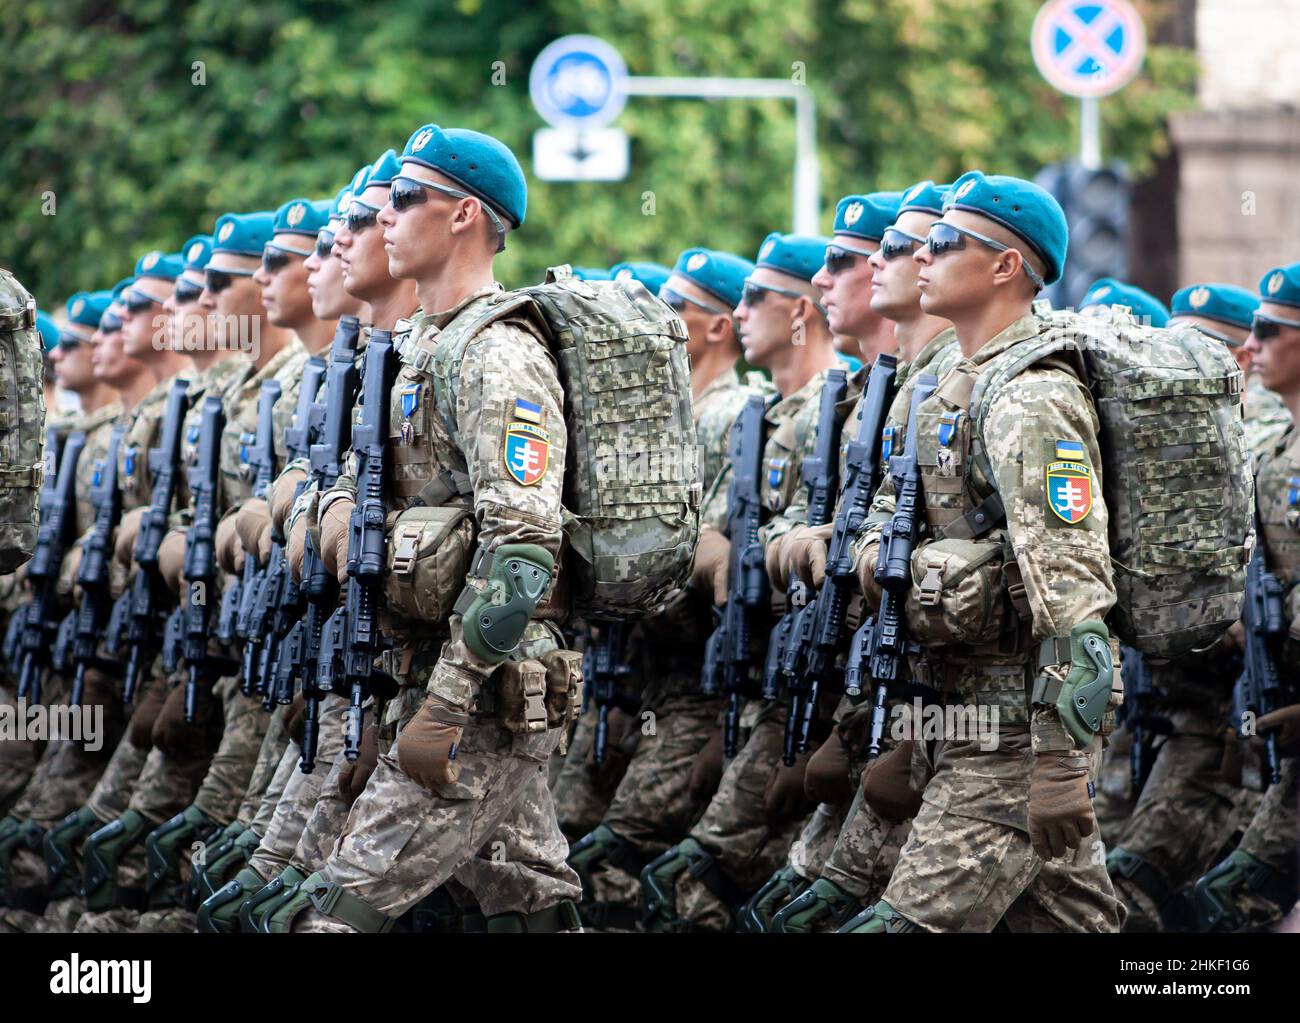 Ukraine, Kiew - 18. August 2021: Luftstreitkräfte. Ukrainisches Militär. Es gibt eine Abteilung von Rettern. Helfer. Das Militärsystem marschiert in der Parade ein. Marsch der Menge. Soldaten der Armee. Stockfoto